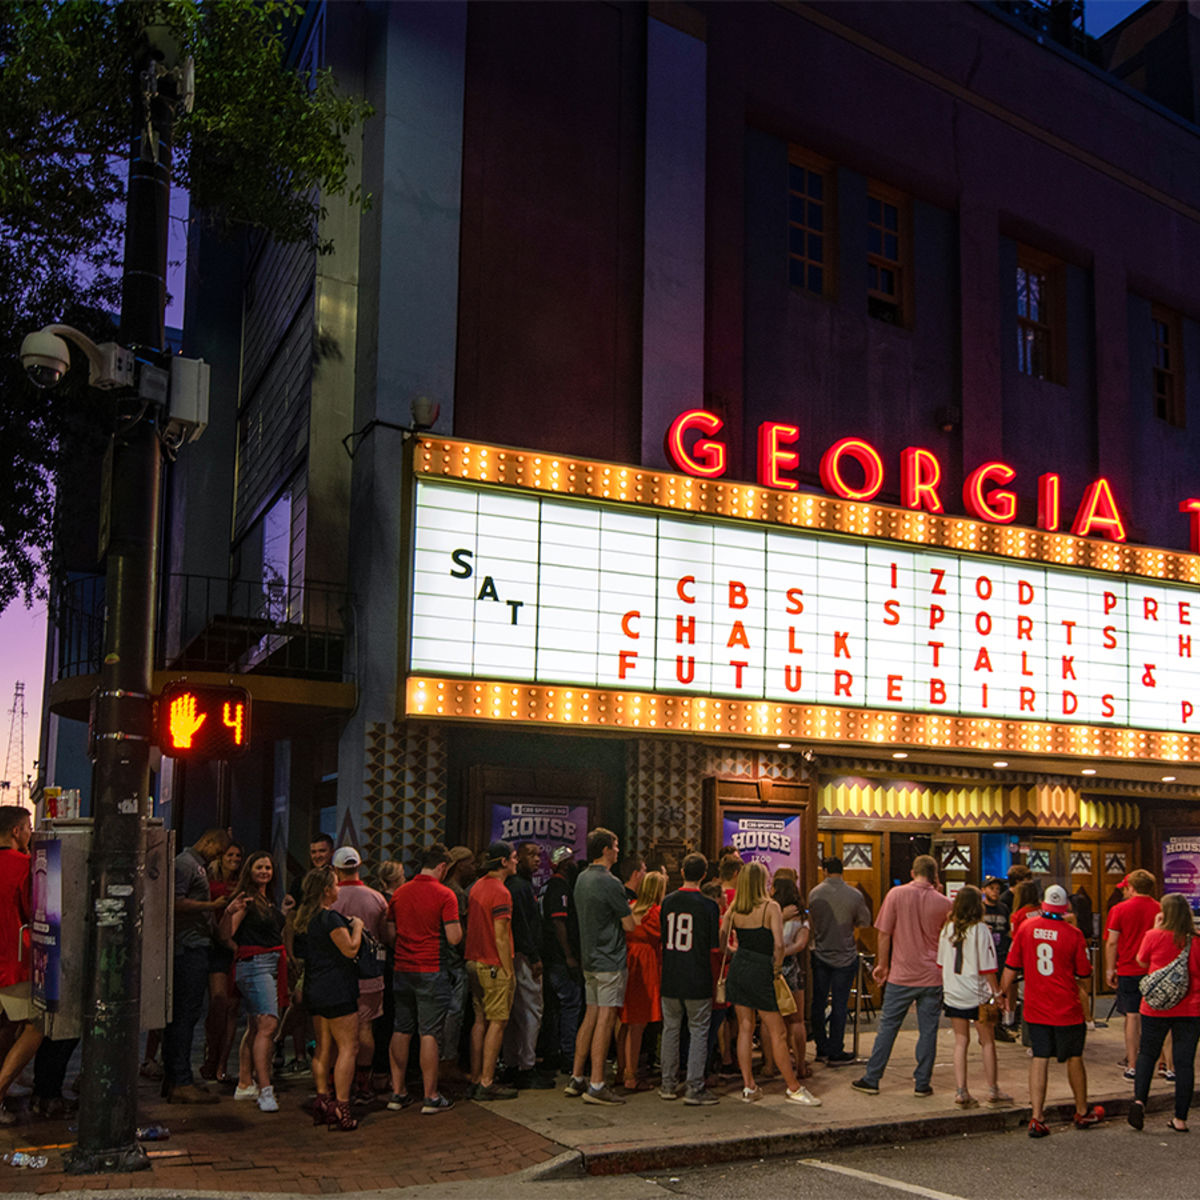 Georgia Theatre line up